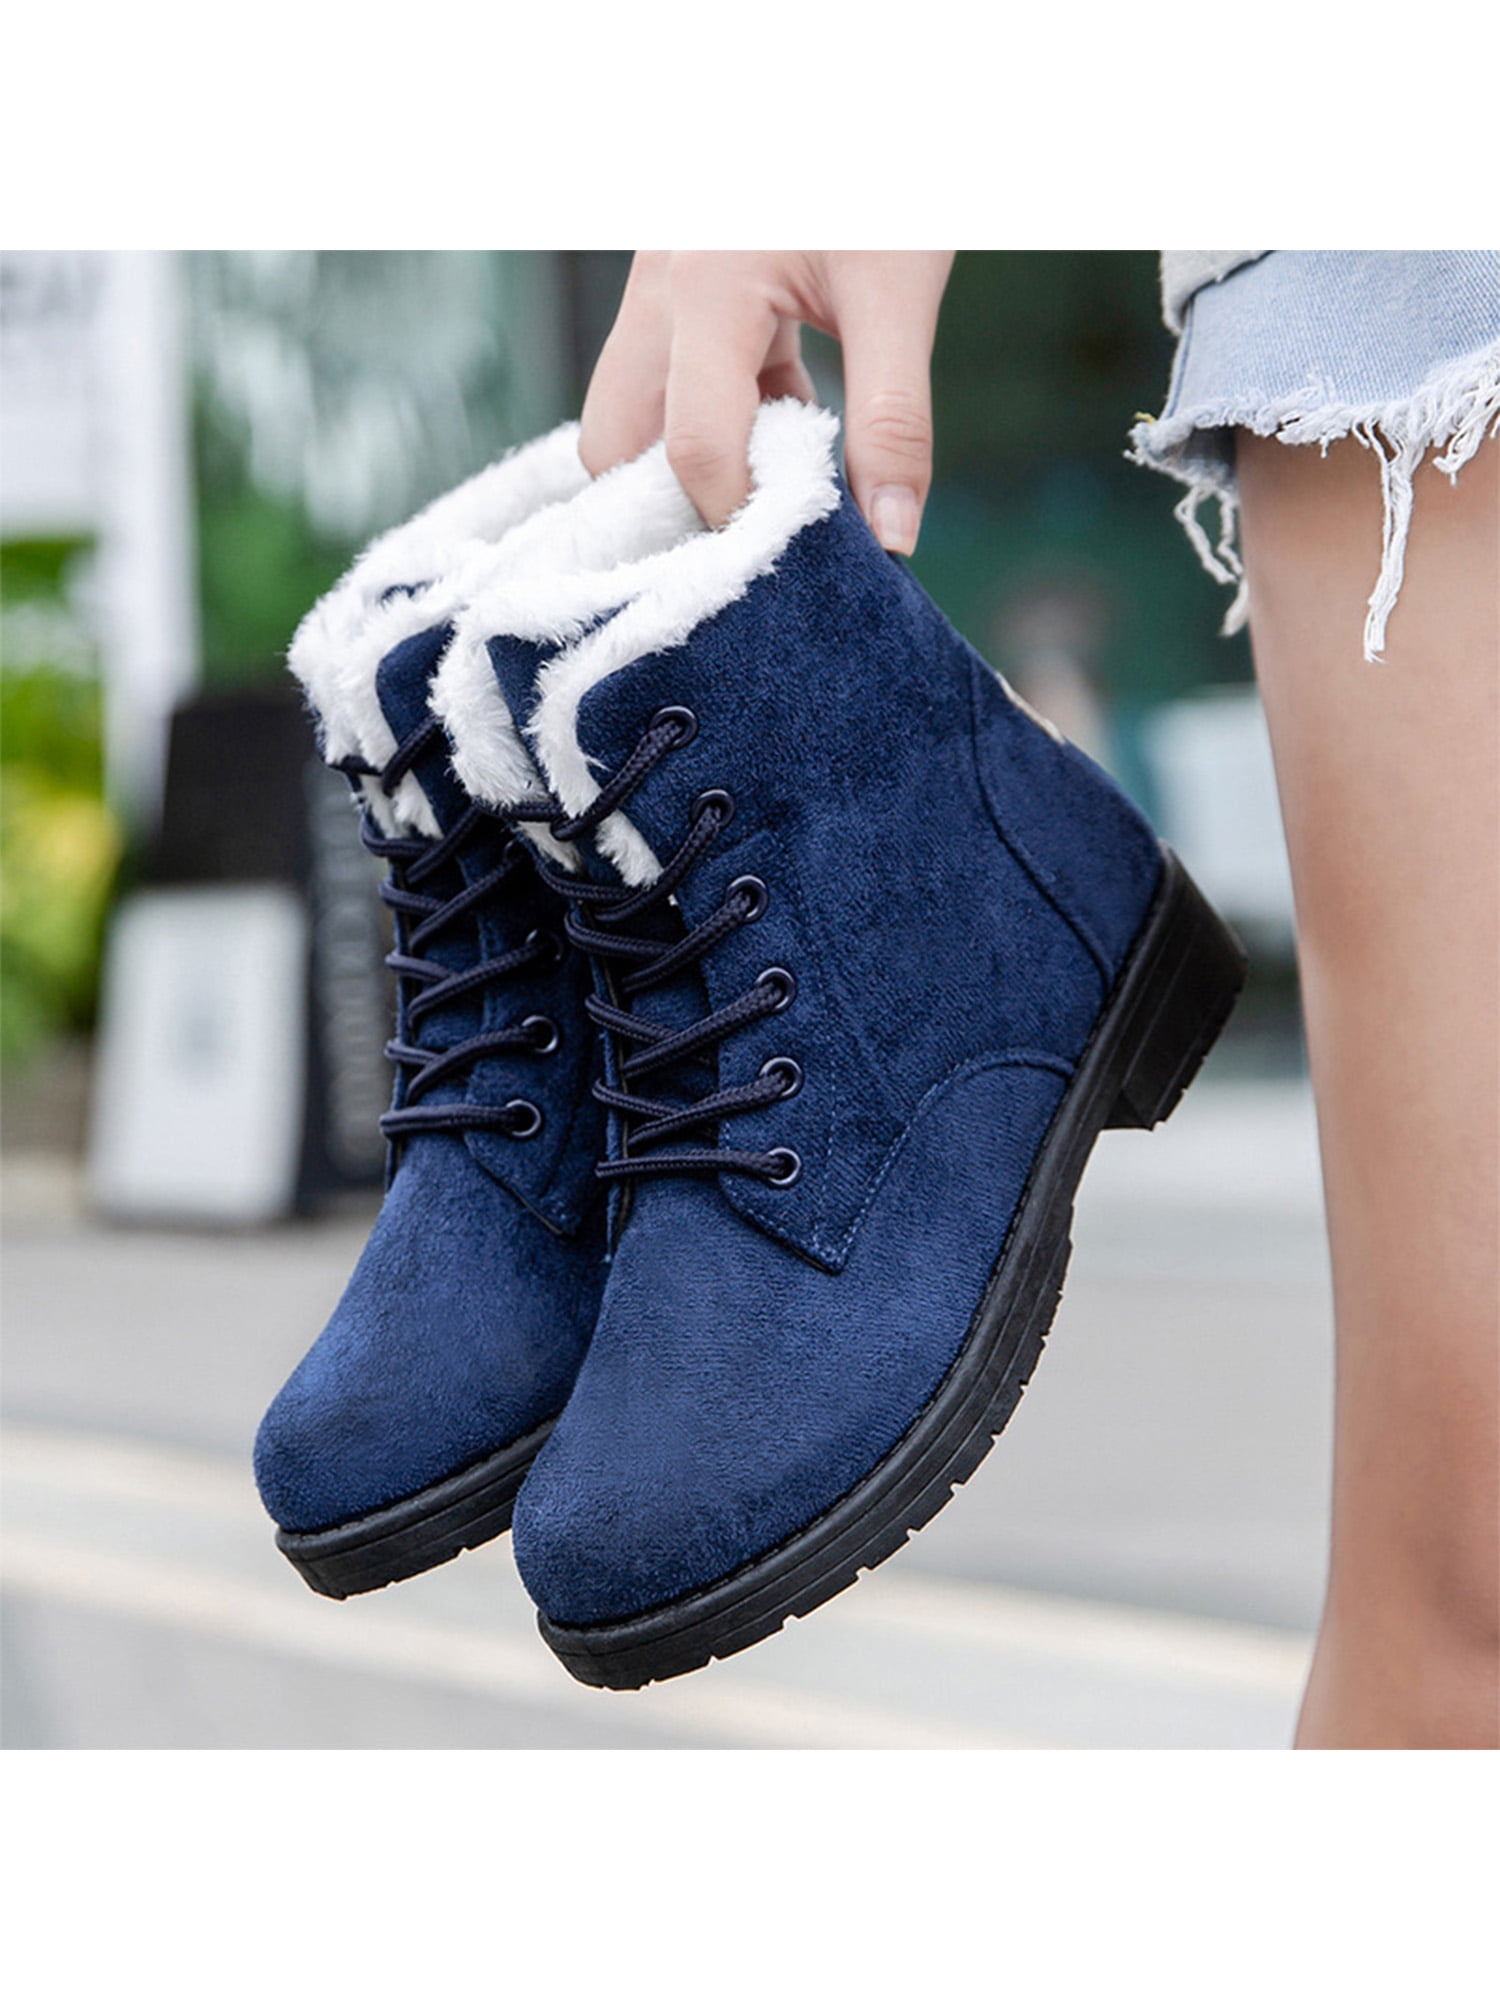 Fangasis Winter Boots for Women Platform Cotton Warm Plush Snow